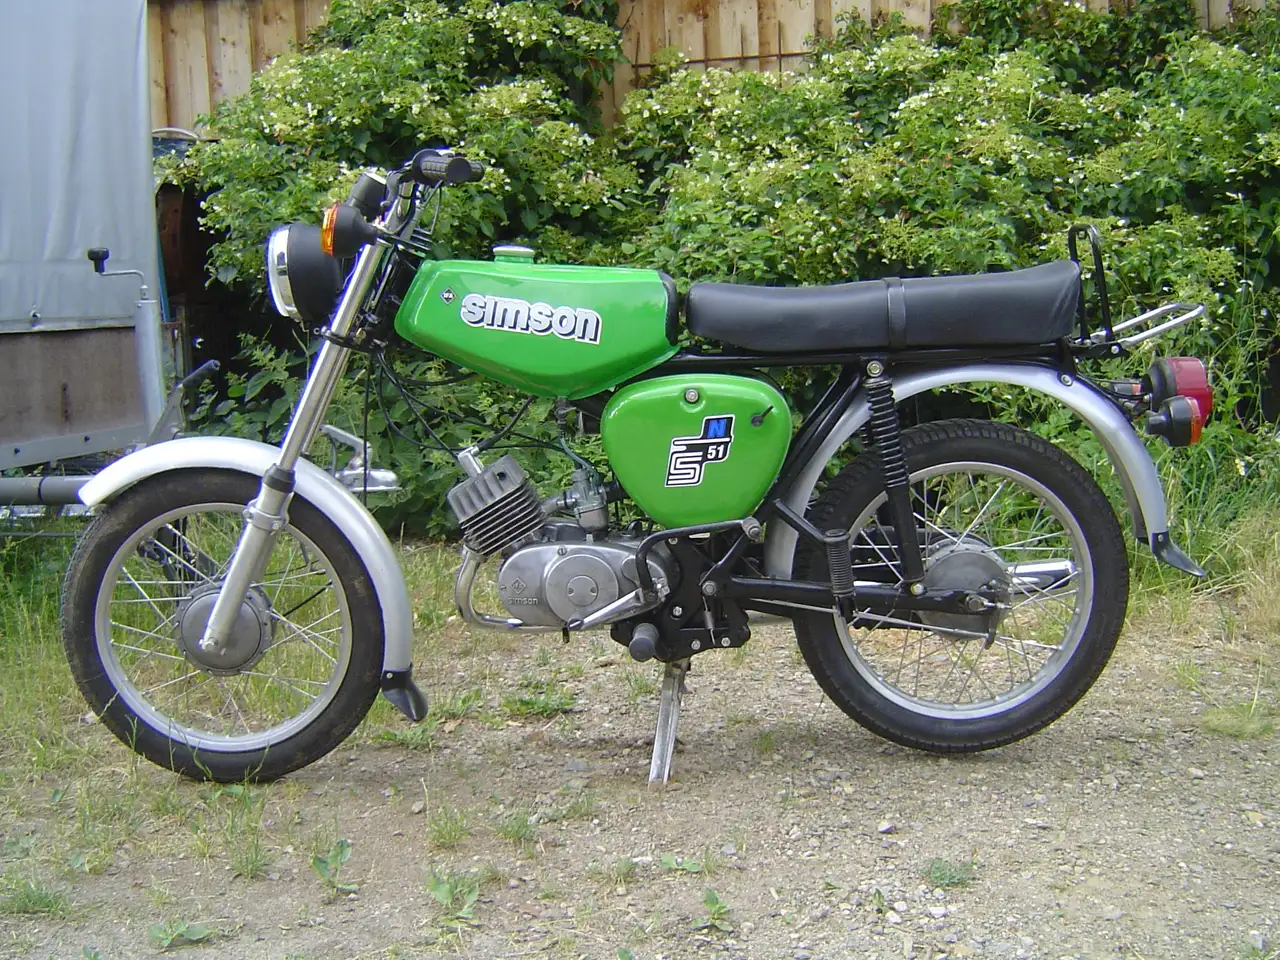 Simson S 50 Mofa/Moped/Mokick in Grün gebraucht in Eibenstock für